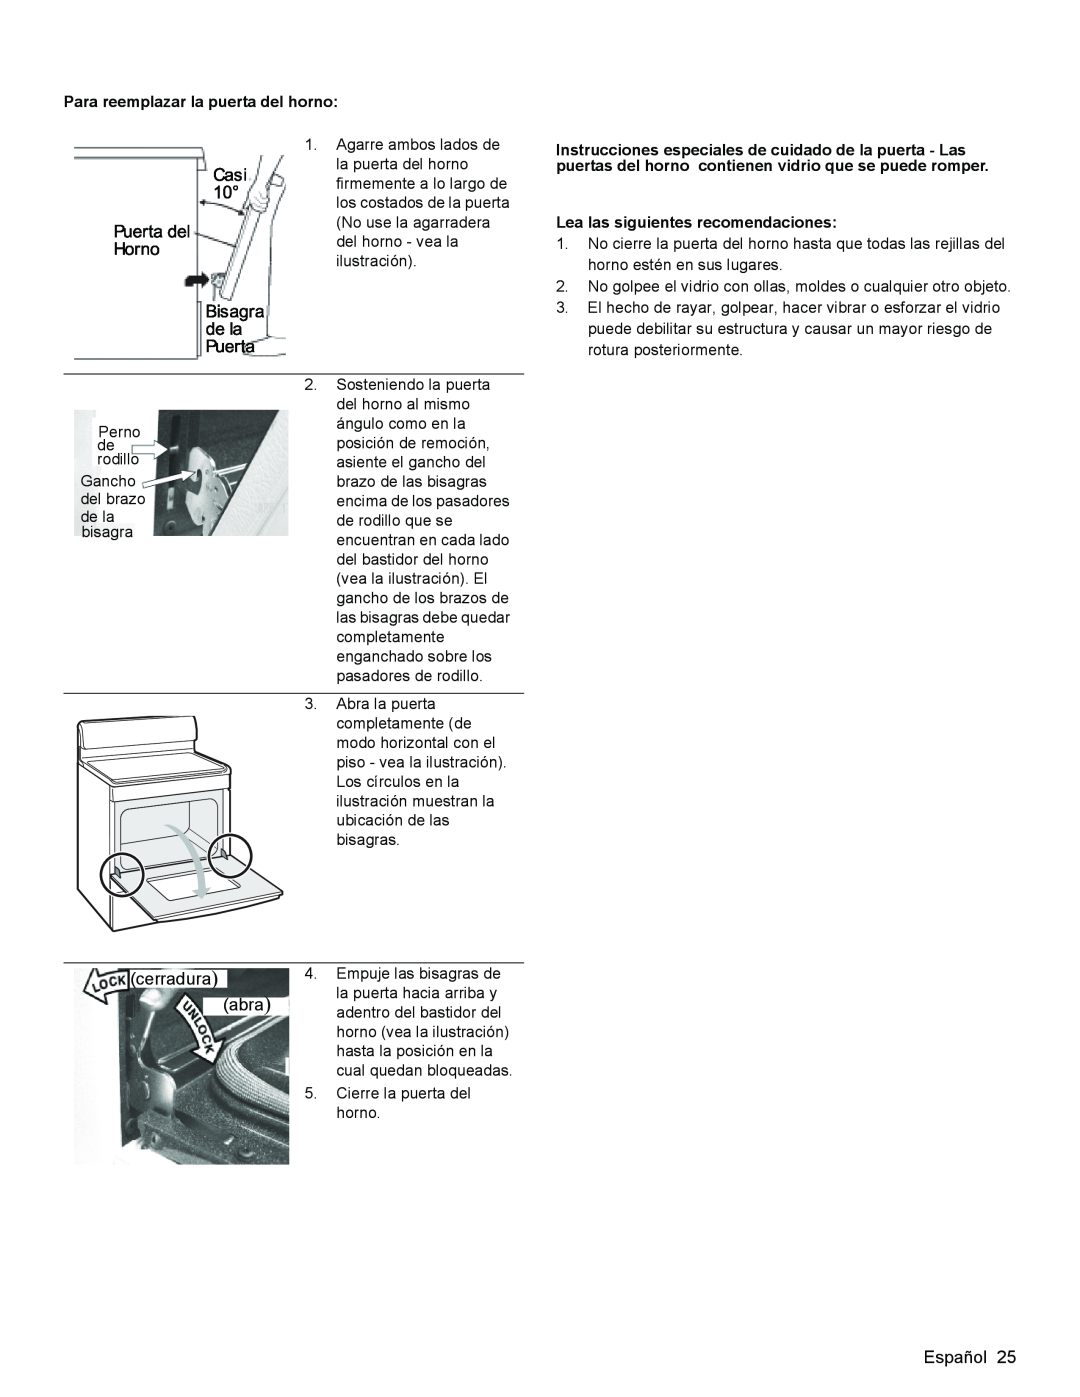 Bosch Appliances HGS3023UC manual Para reemplazar la puerta del horno, Lea las siguientes recomendaciones, del brazo 